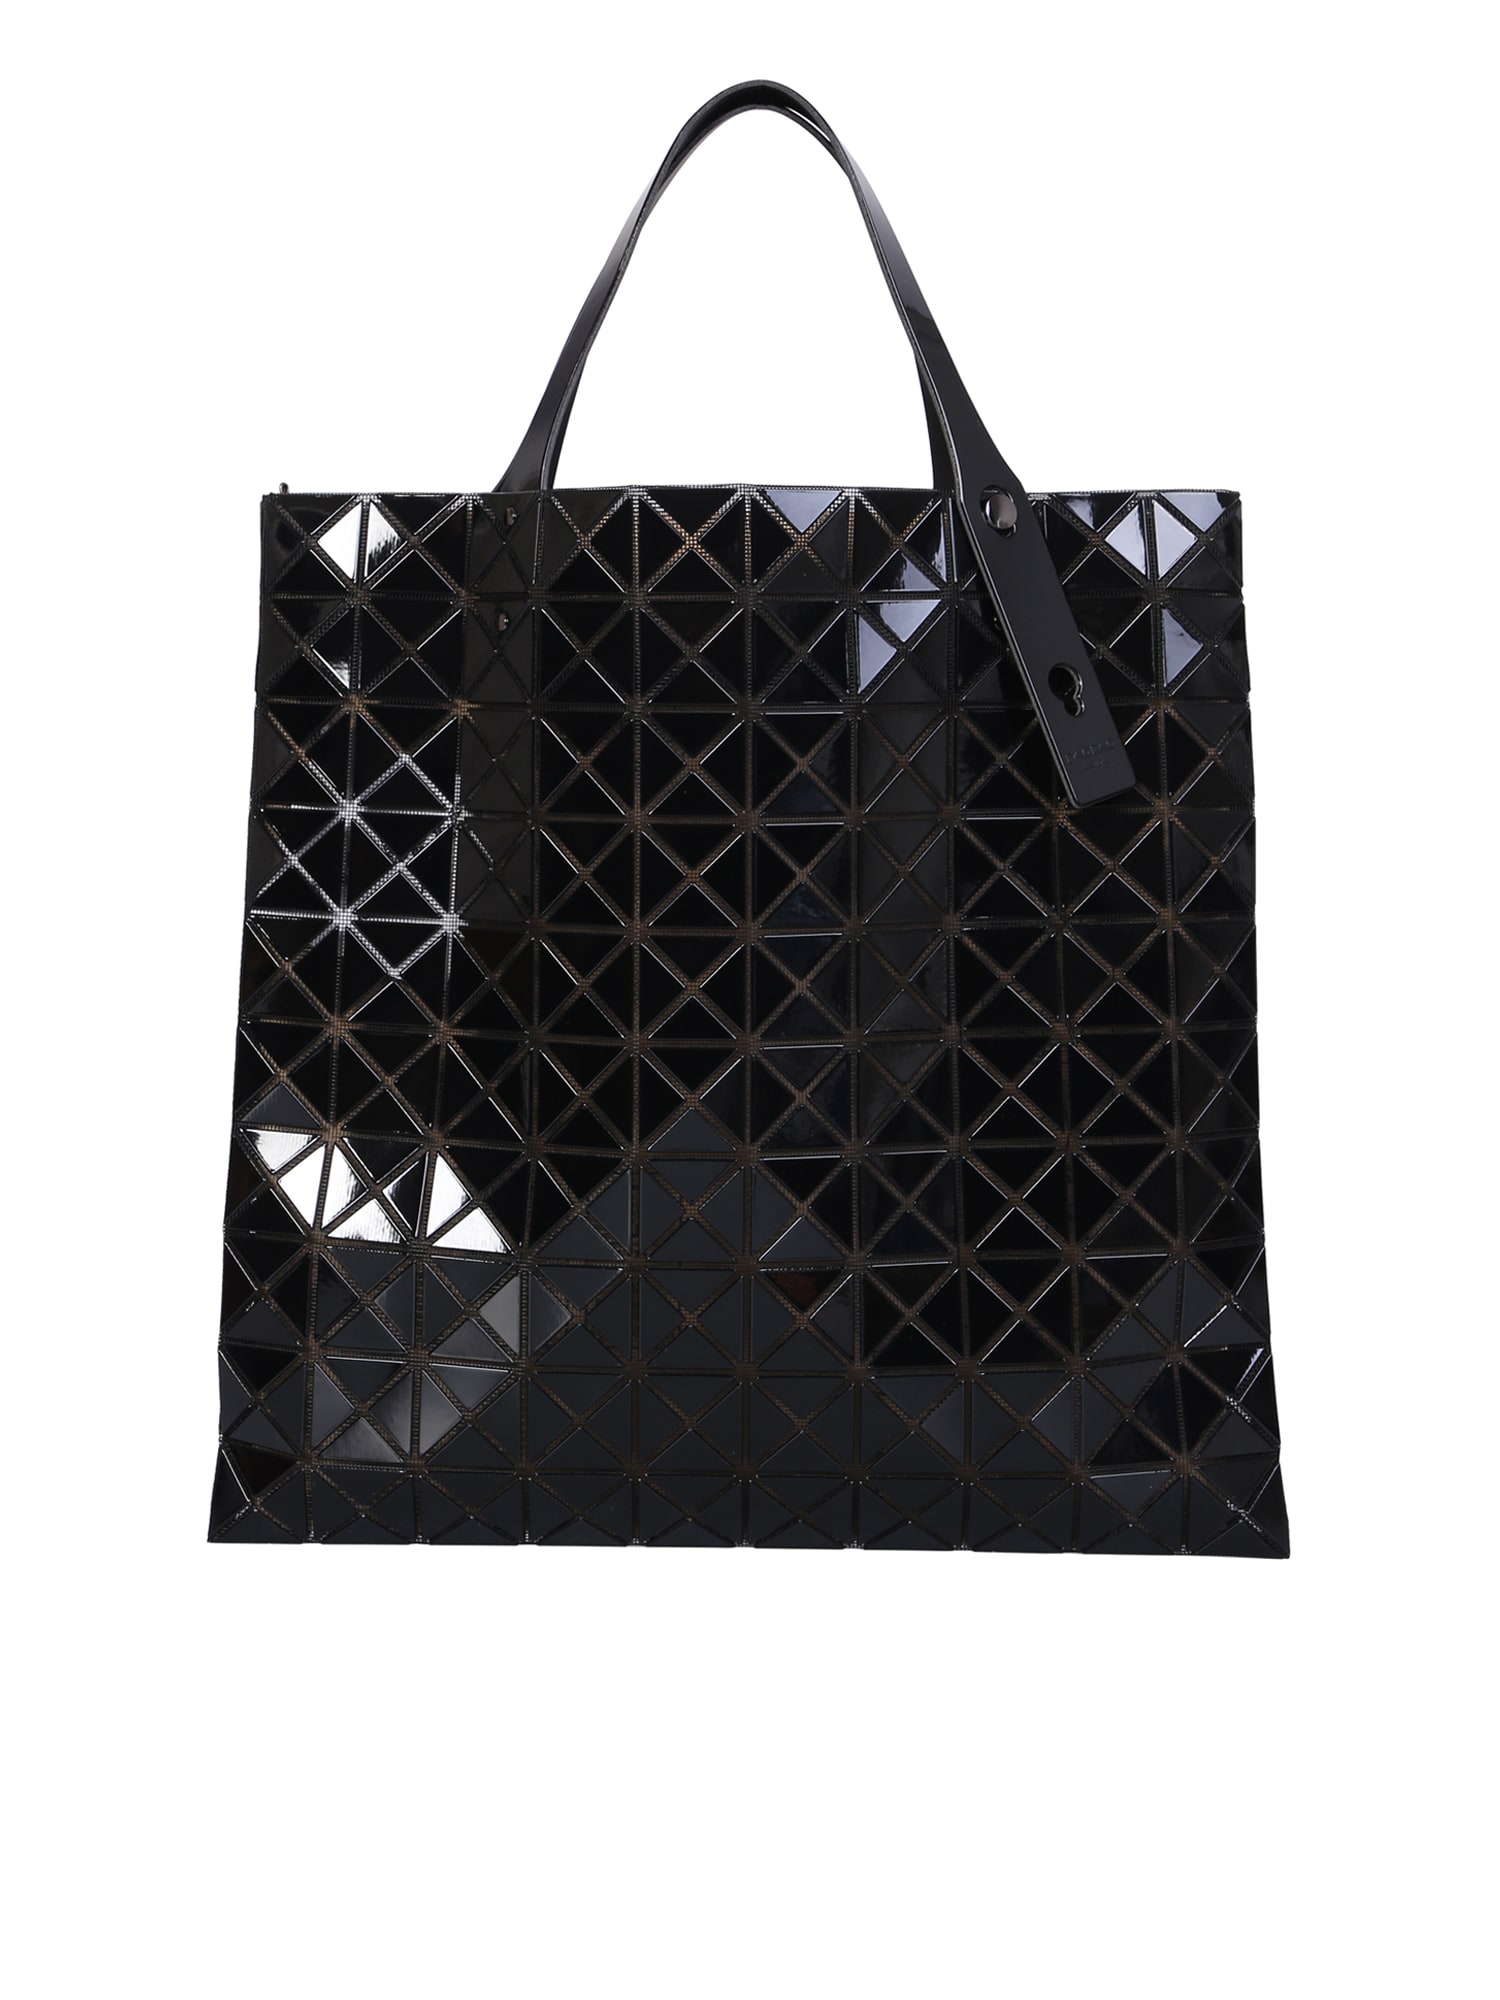 Issey Miyake Black Prism Bag